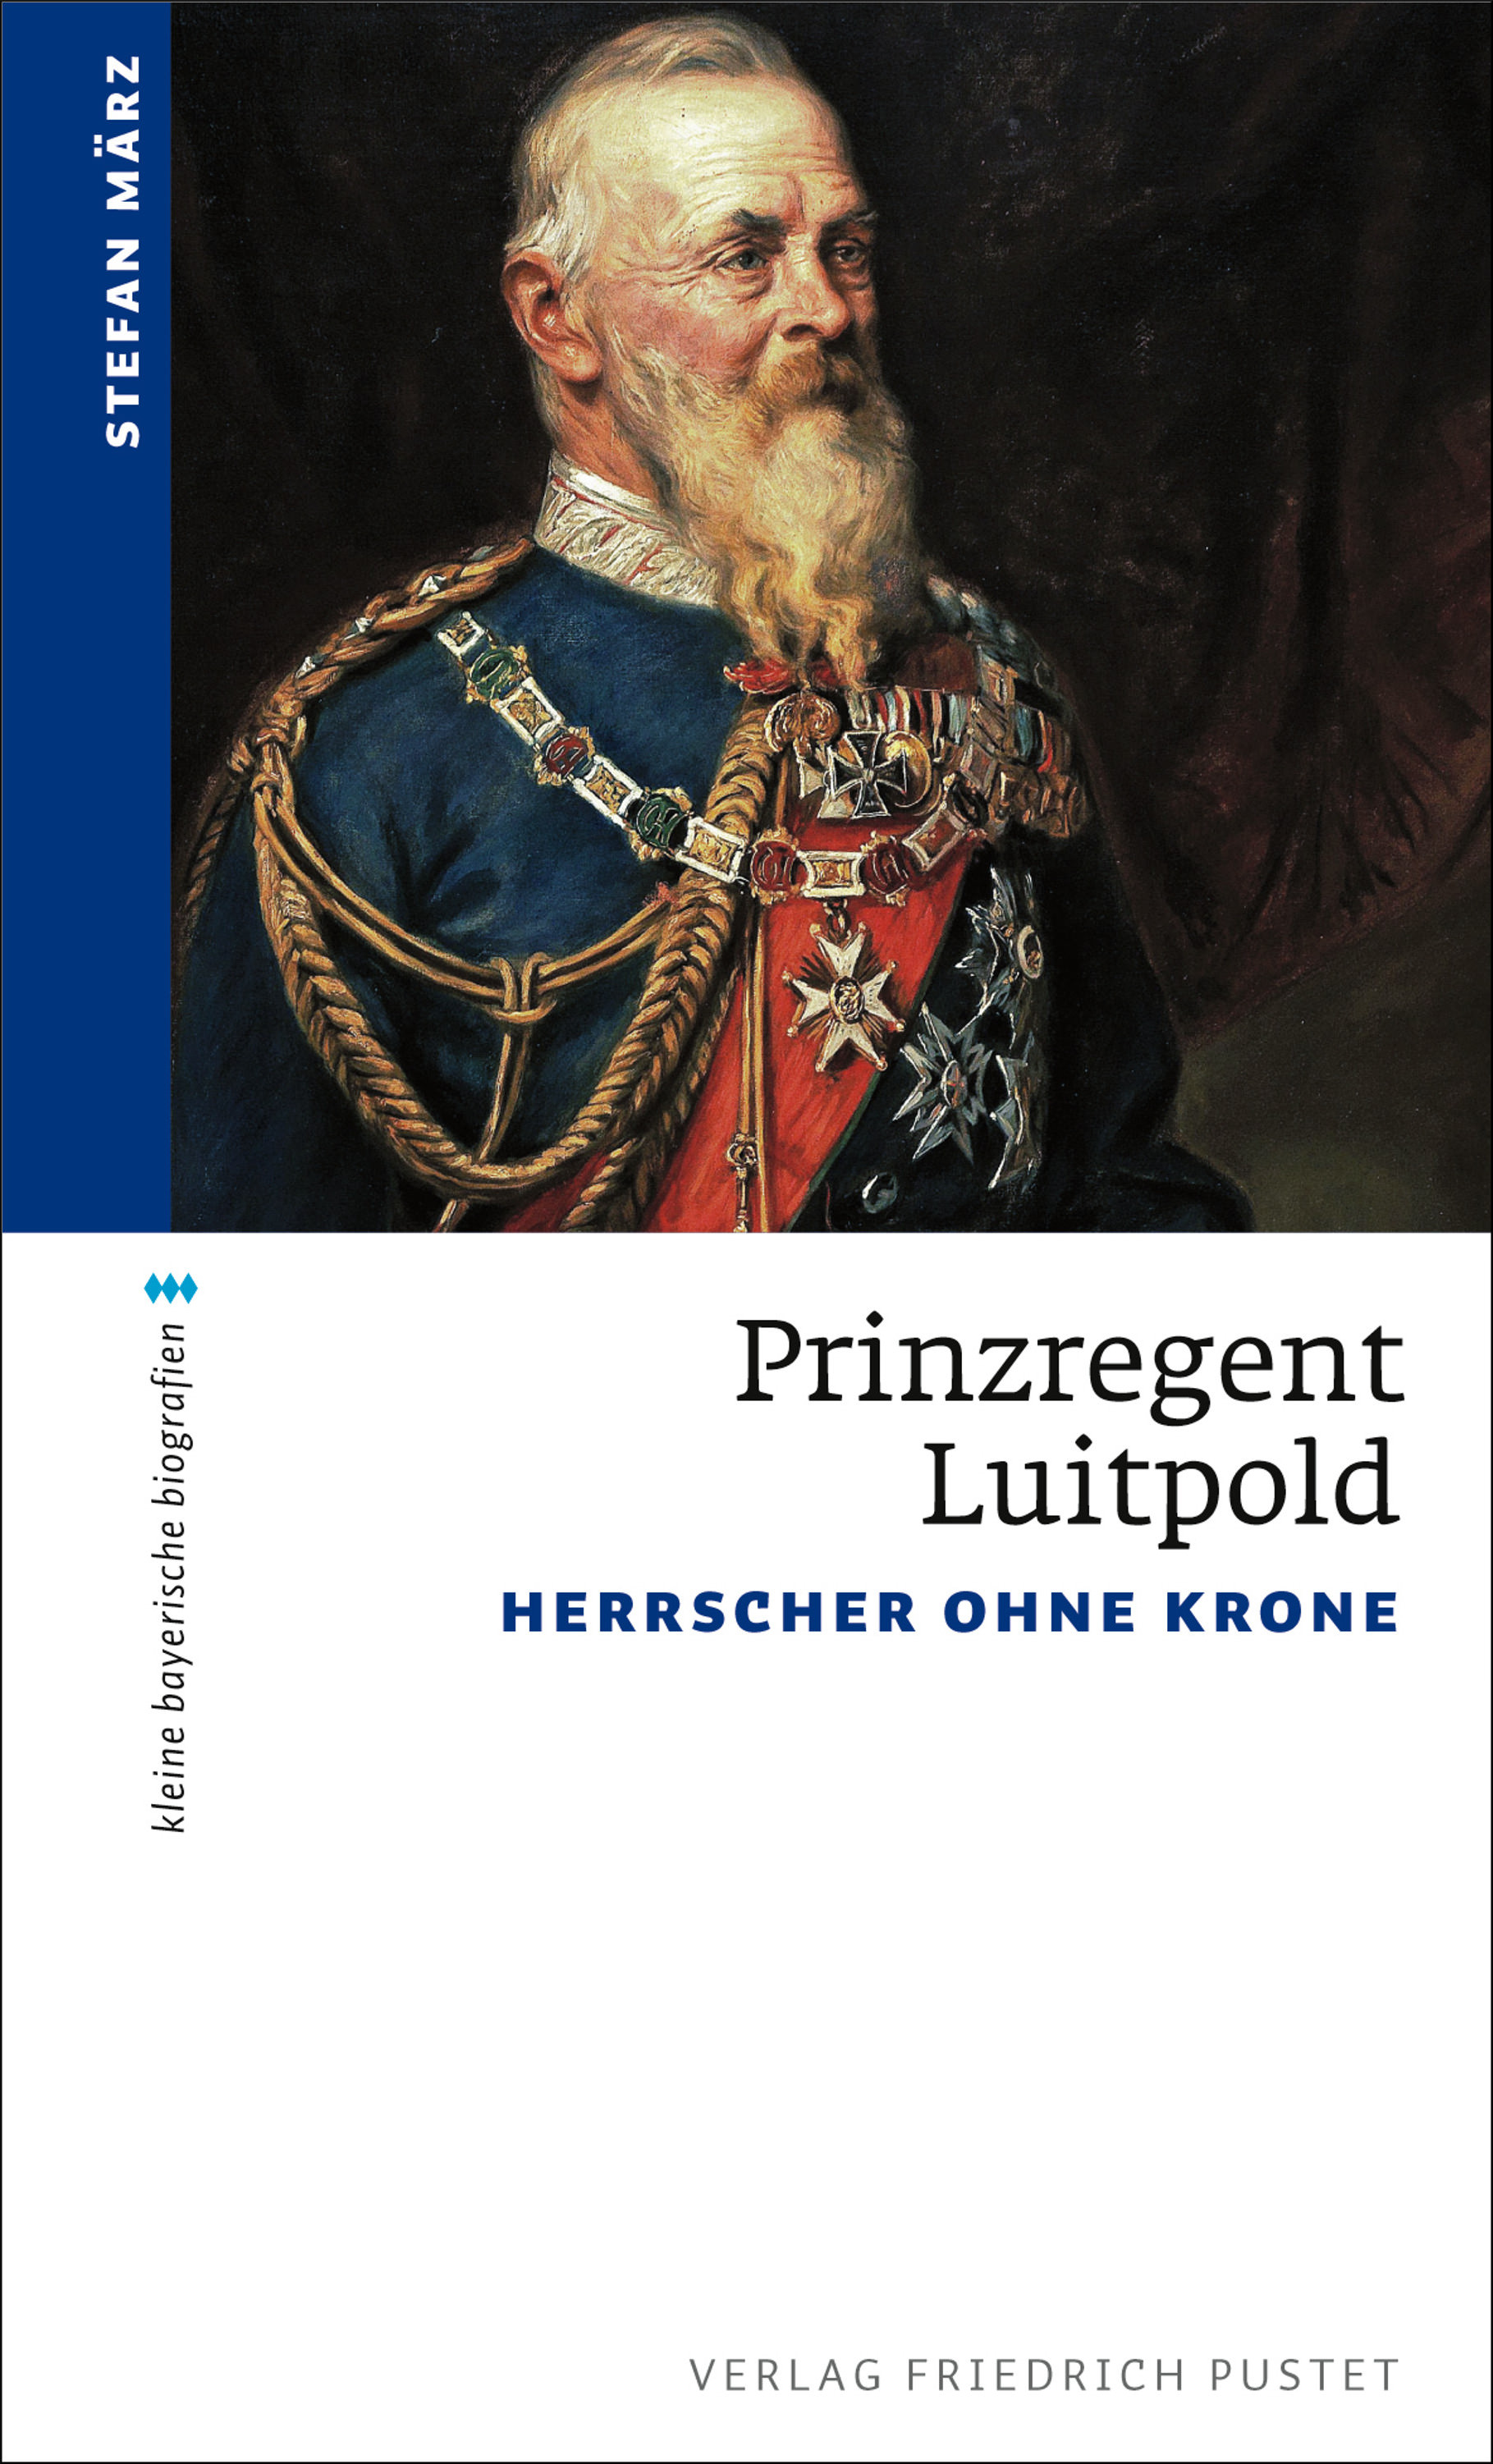 März Stefan - Prinzregent Luitpold